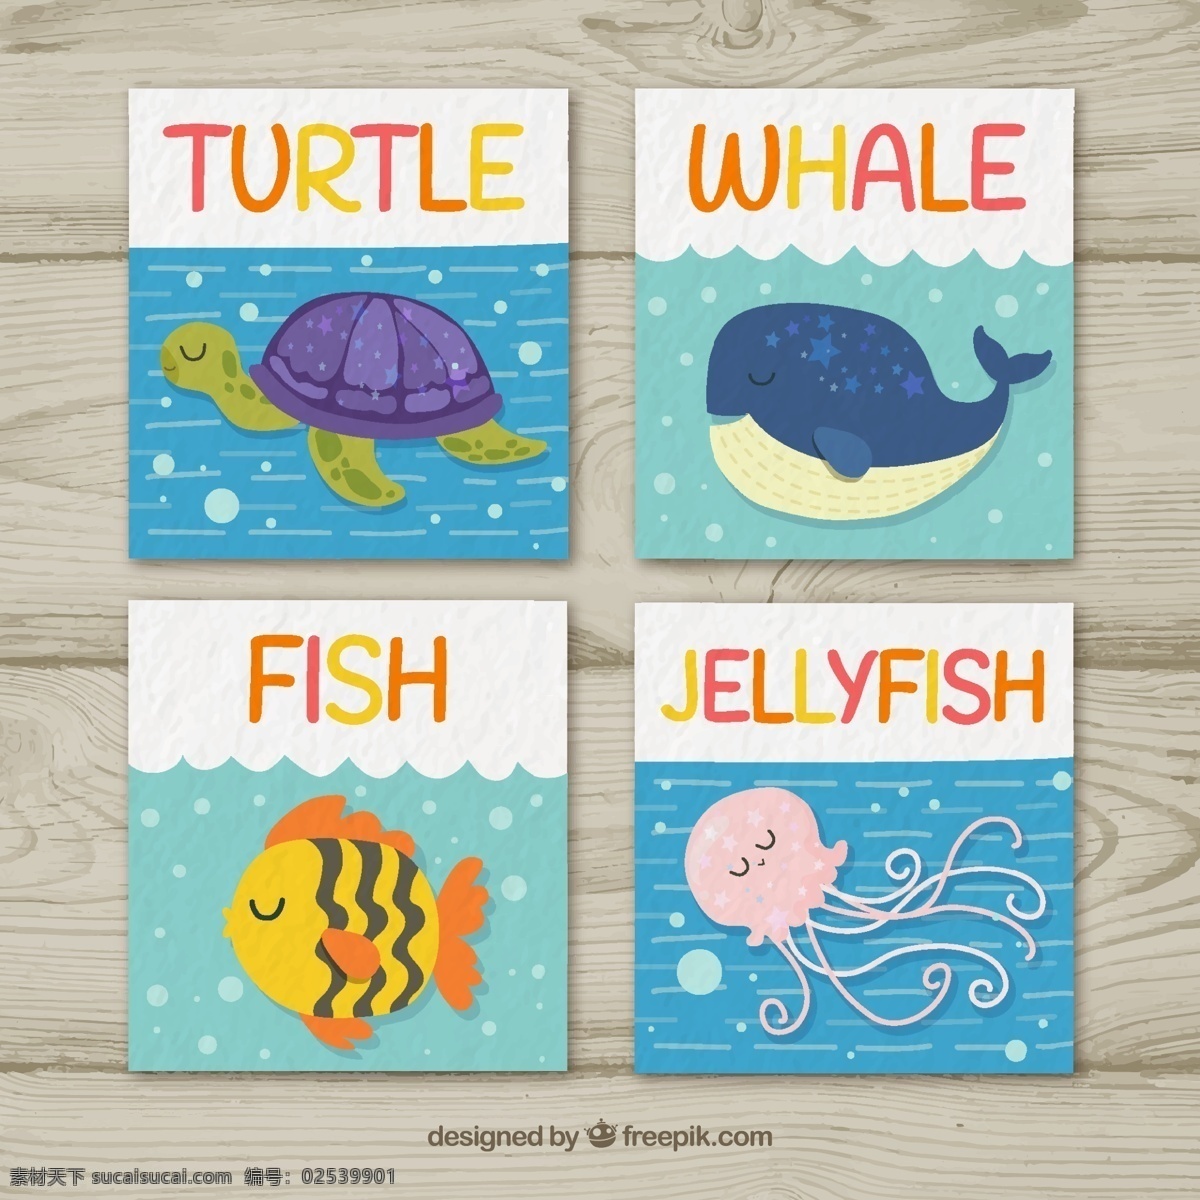 卡通海洋动物 卡通动物 海洋动物 海龟 章鱼 鲸鱼 广告 卡通素材